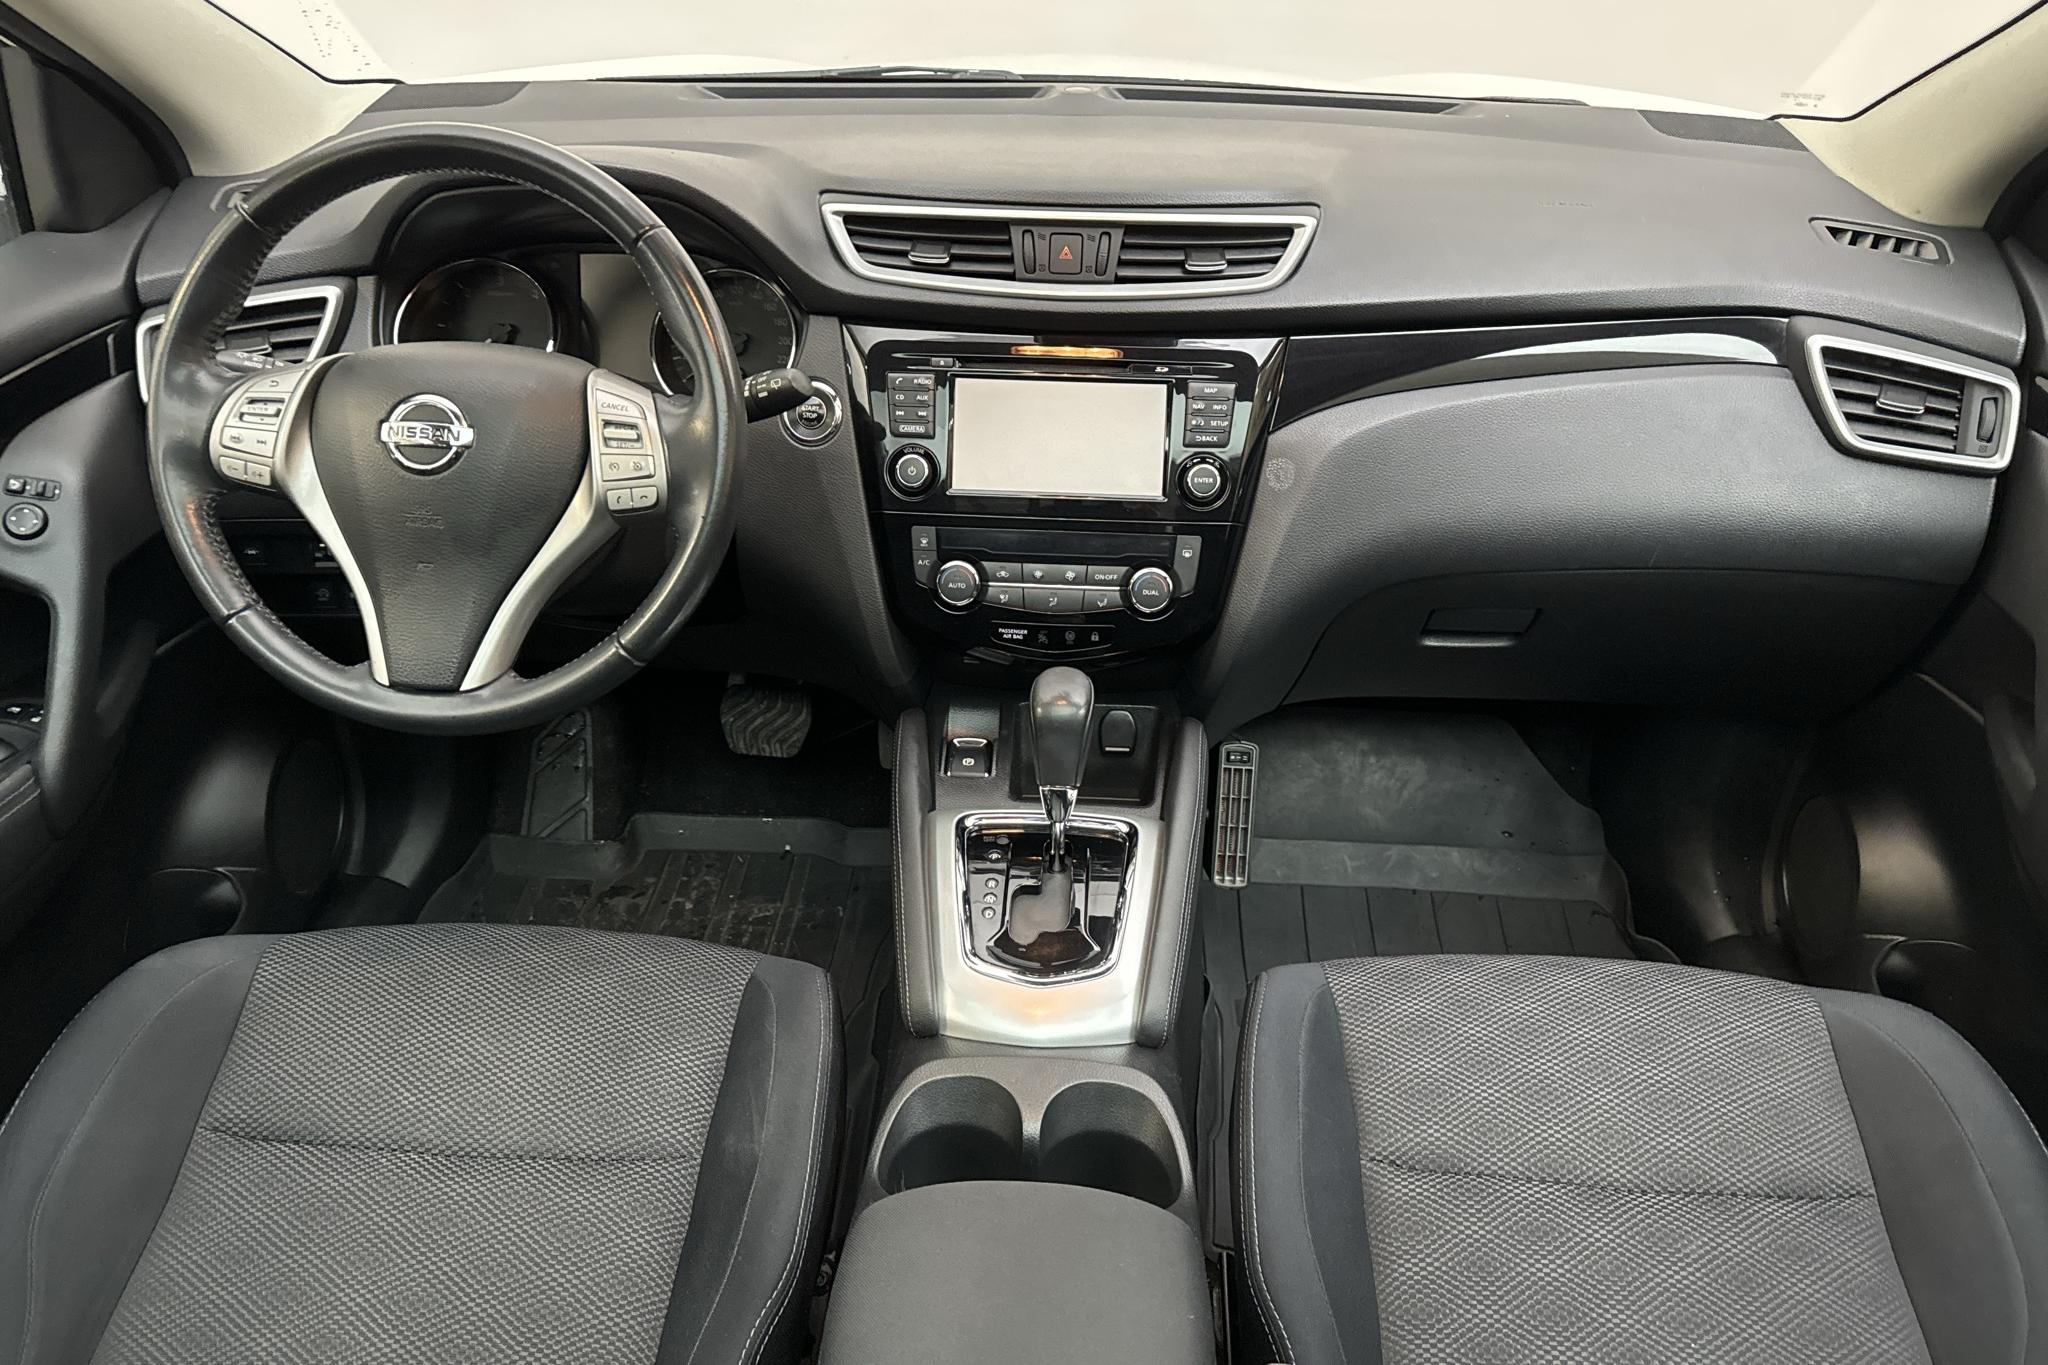 Nissan QASHQAI - 80 220 km - Automatic - white - 2017